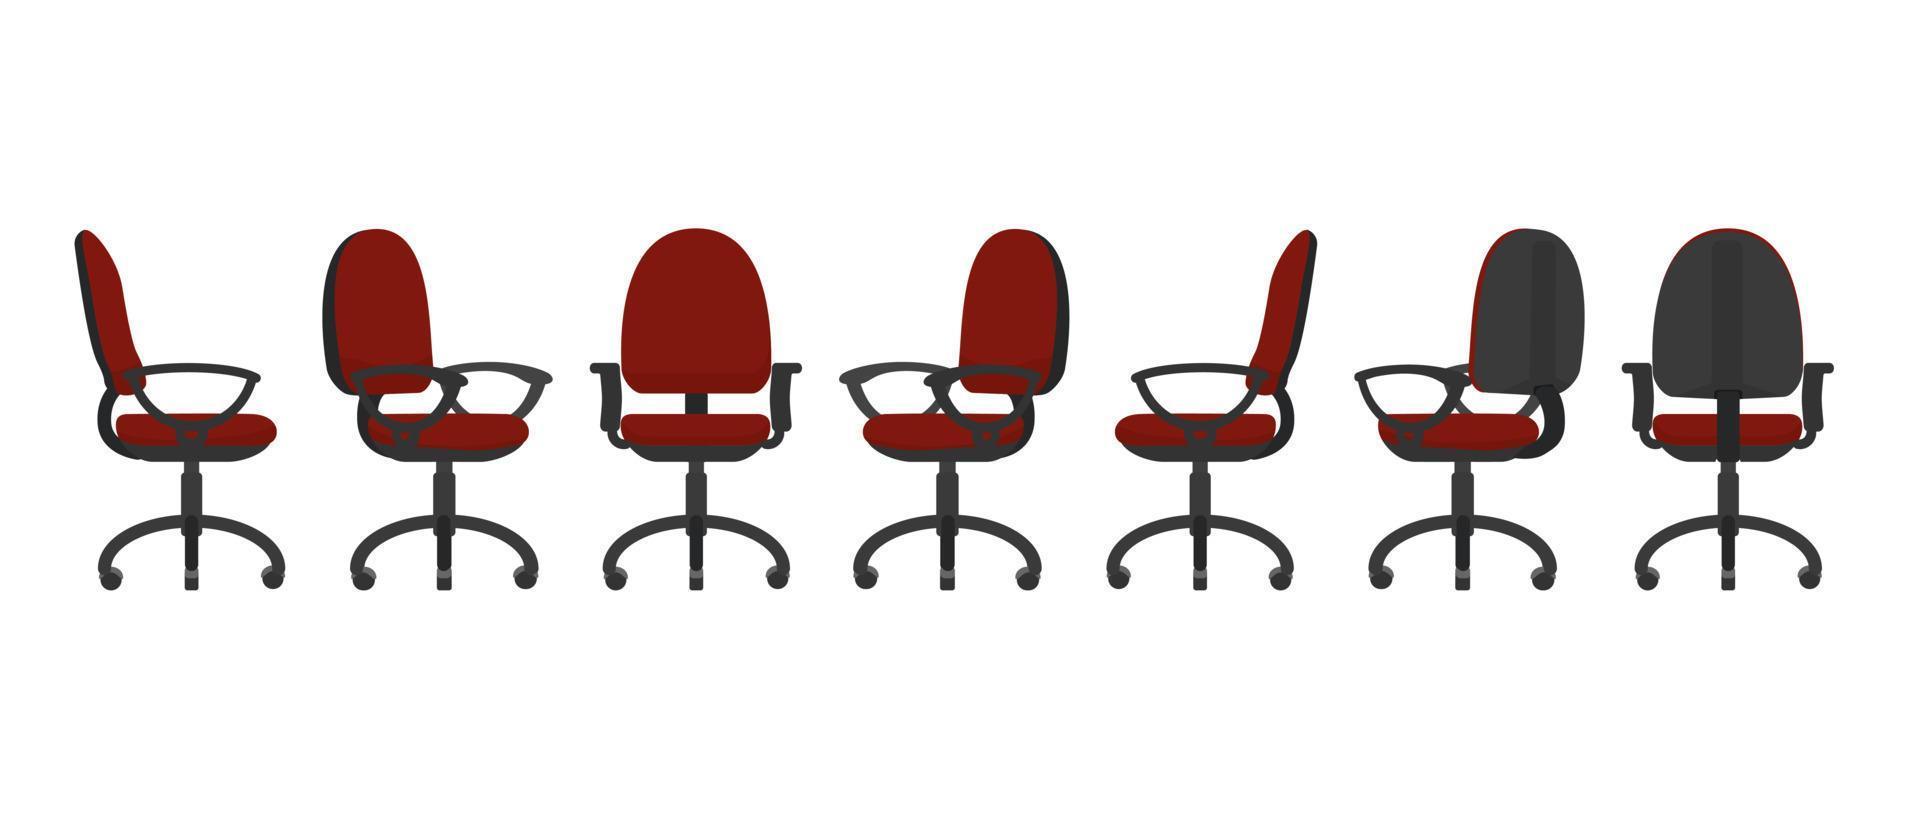 cadeira de escritório vermelha de vários pontos de vista, incluindo frente, costas, laterais, dois terços. estilo simples isolado na ilustração vetorial branca. vetor